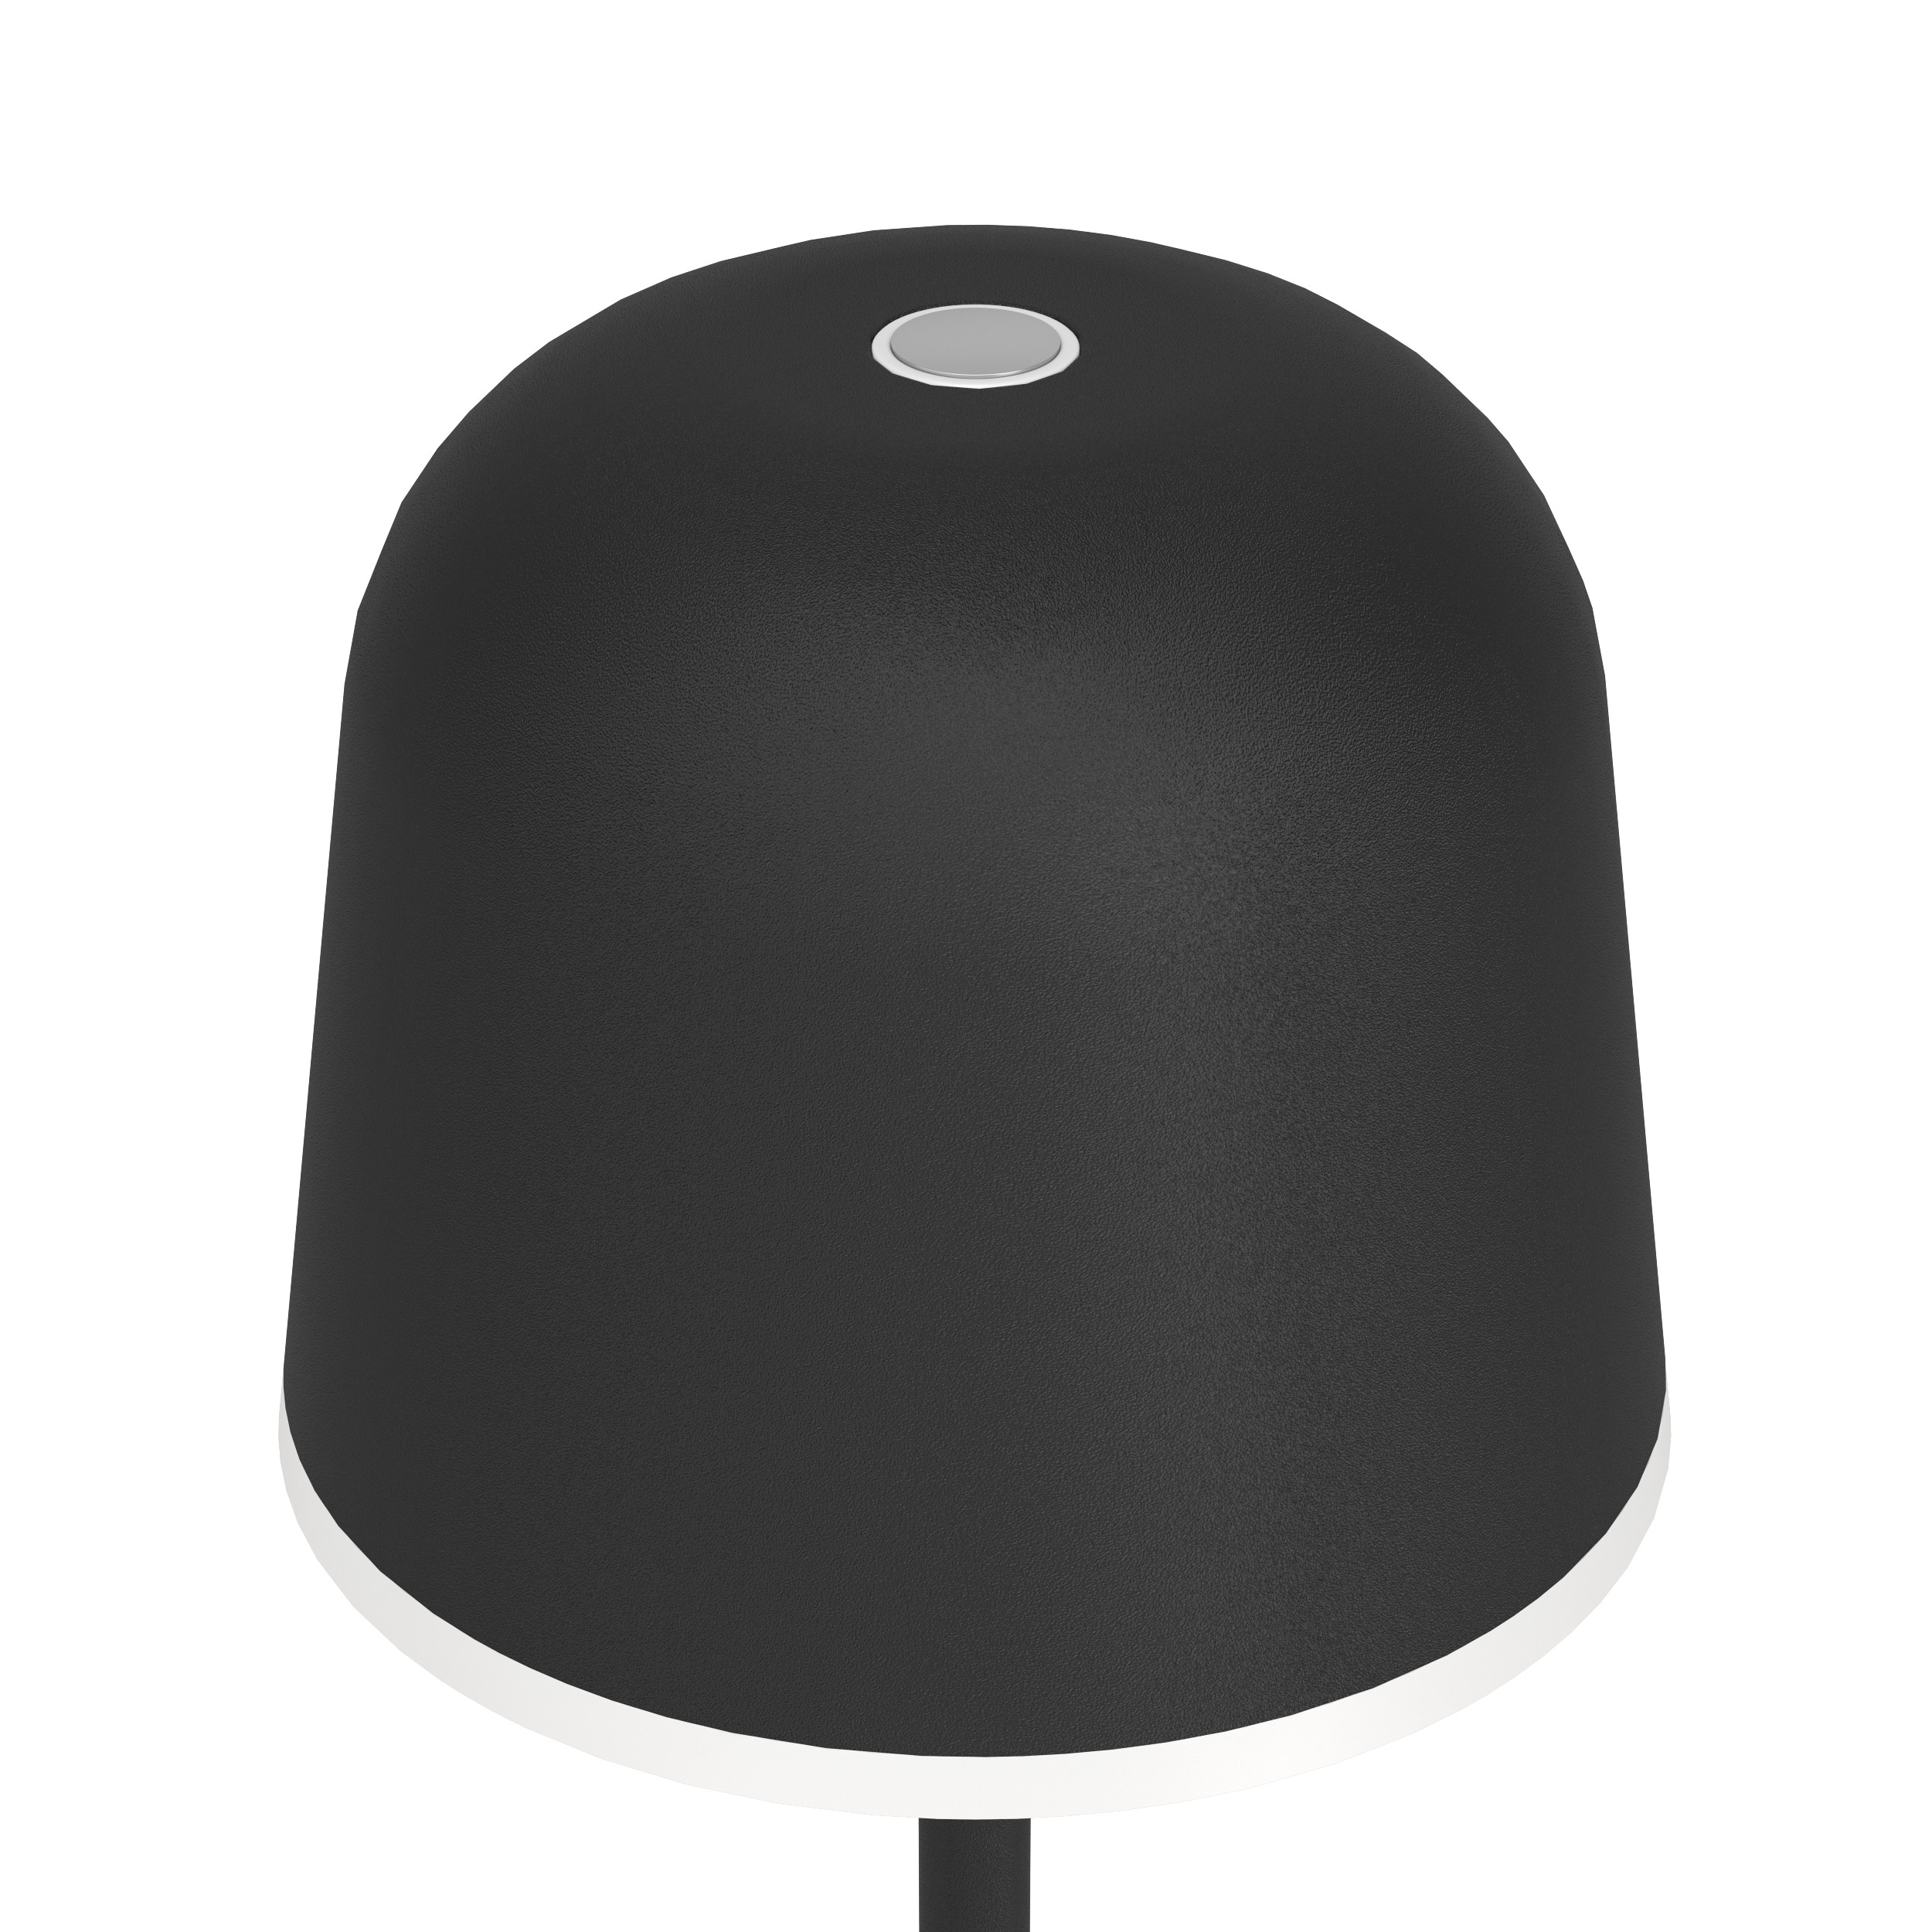 EGLO Lampe de table Mannera 900457 noir, batterie